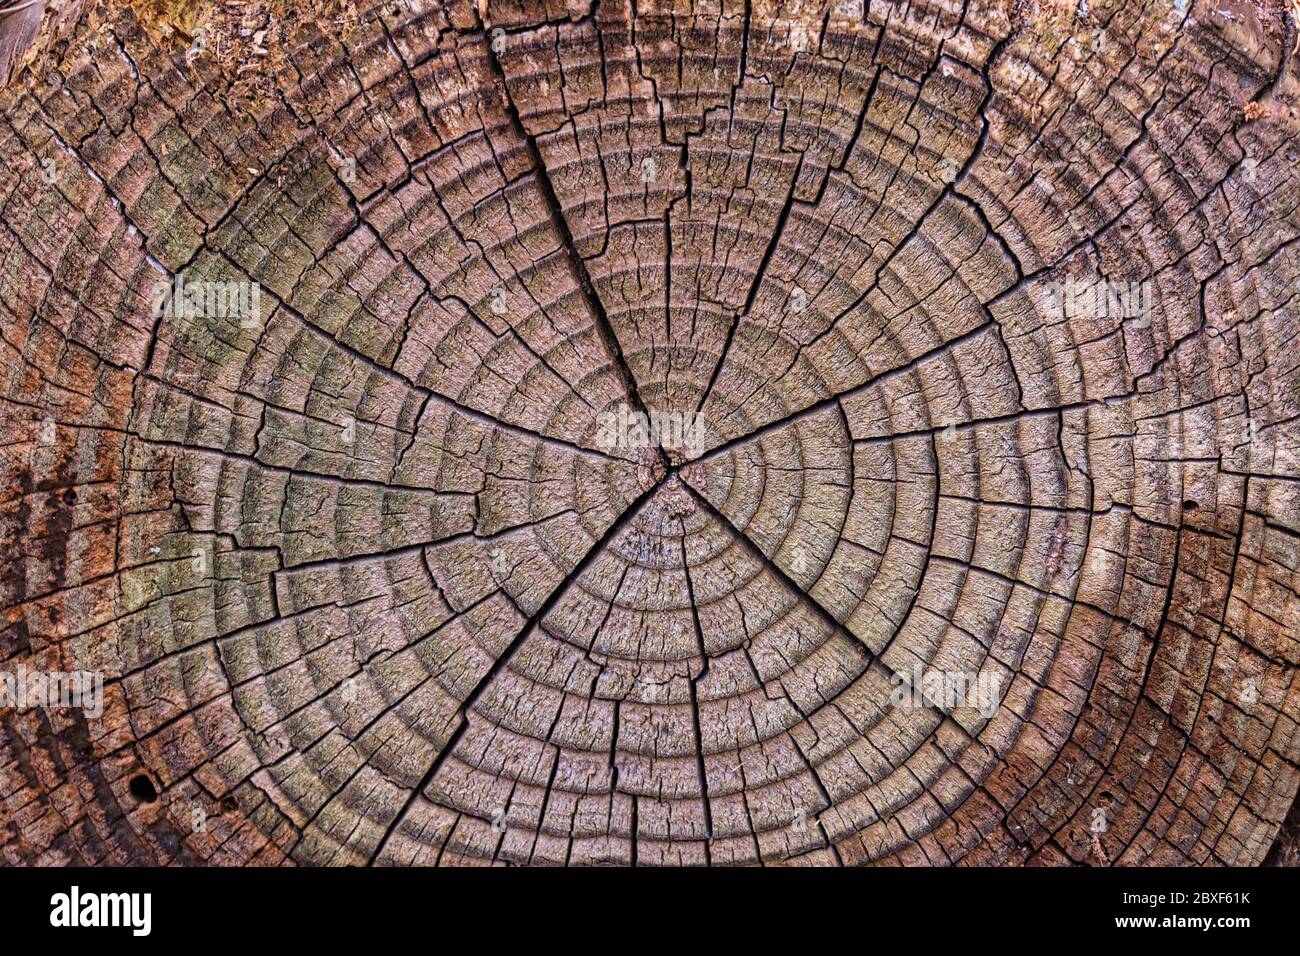 Vieux anneaux de bois de bois usé texture, la section de bois patiné avec des anneaux fissurés et étonnant détail texturé fond naturel Banque D'Images